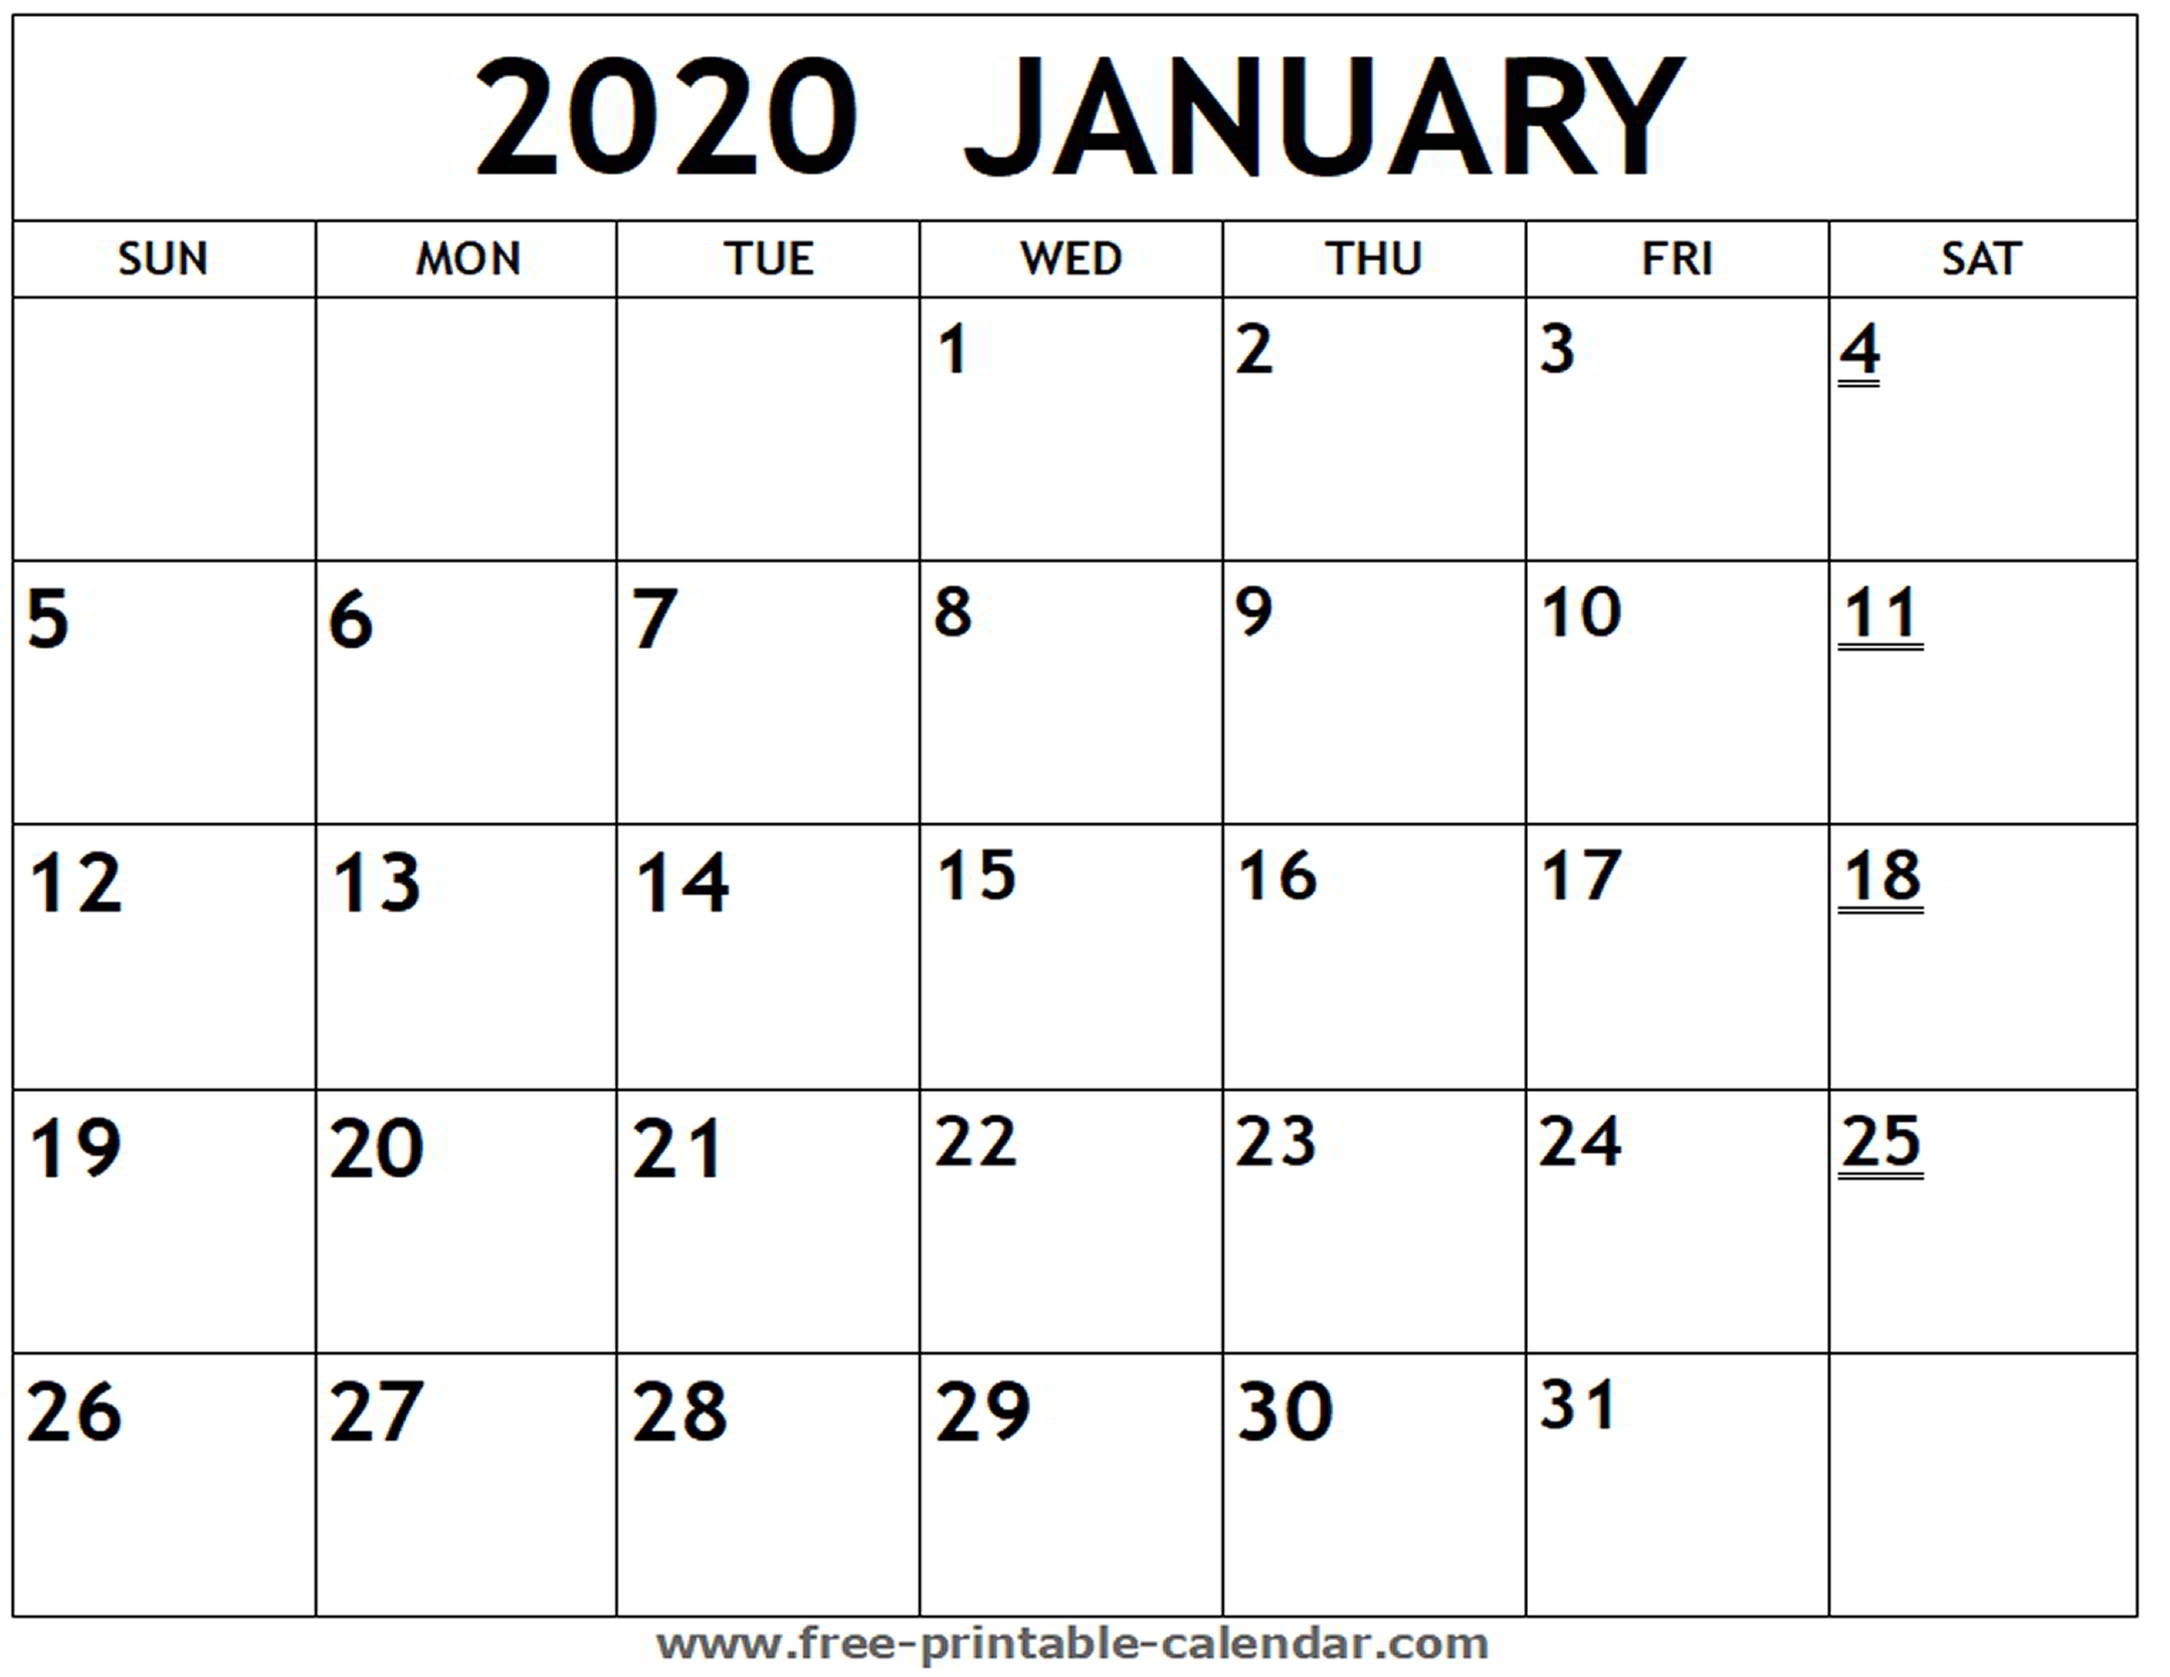 Printable 2020 January Calendar - Free-Printable-Calendar Free Printable 2020 Monthly Calendar